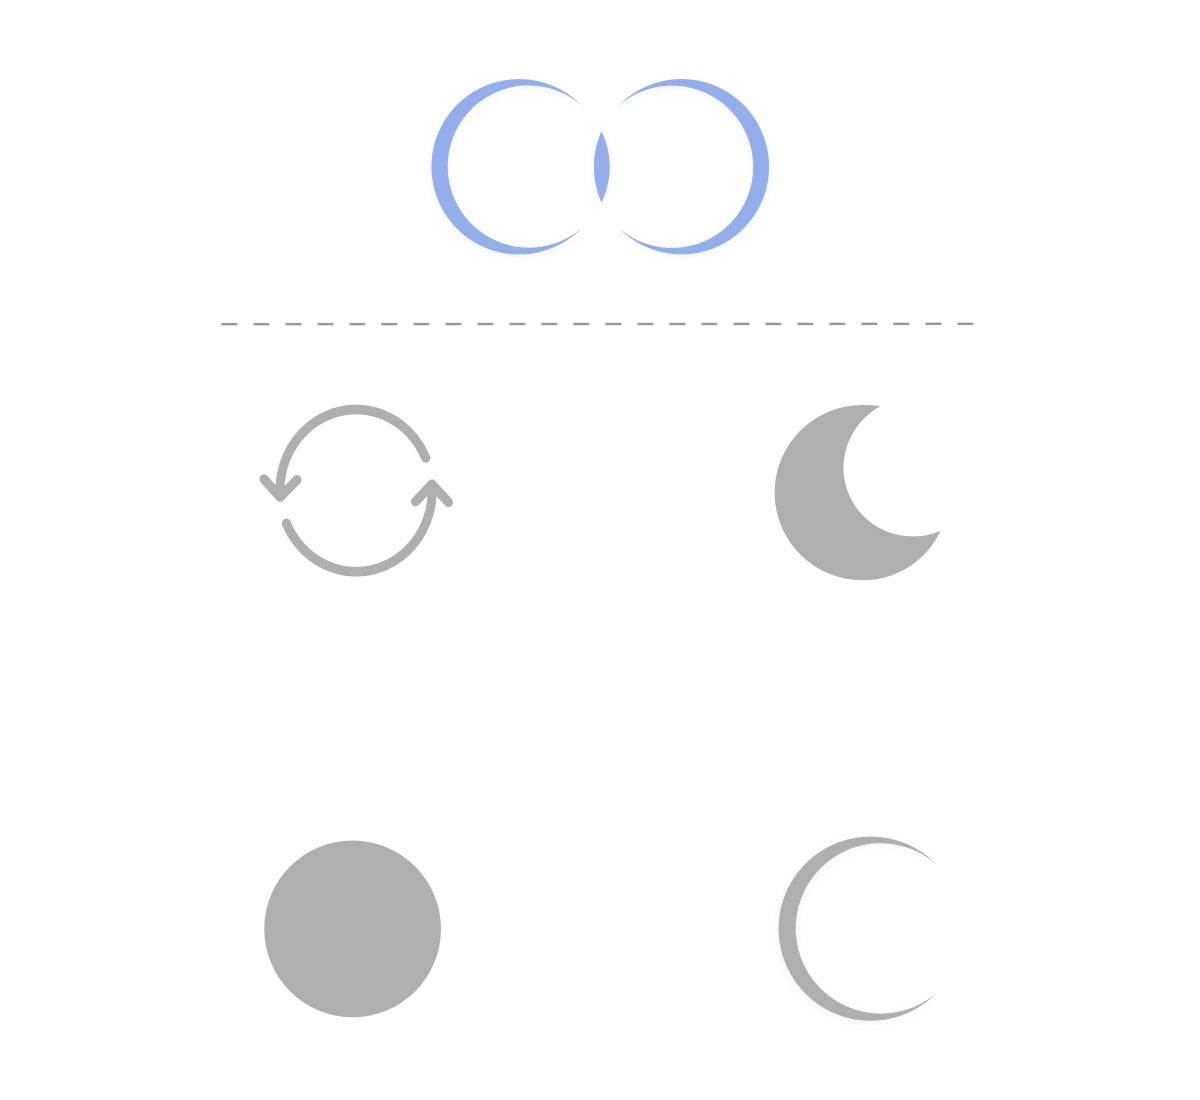 2. ciclo lunar